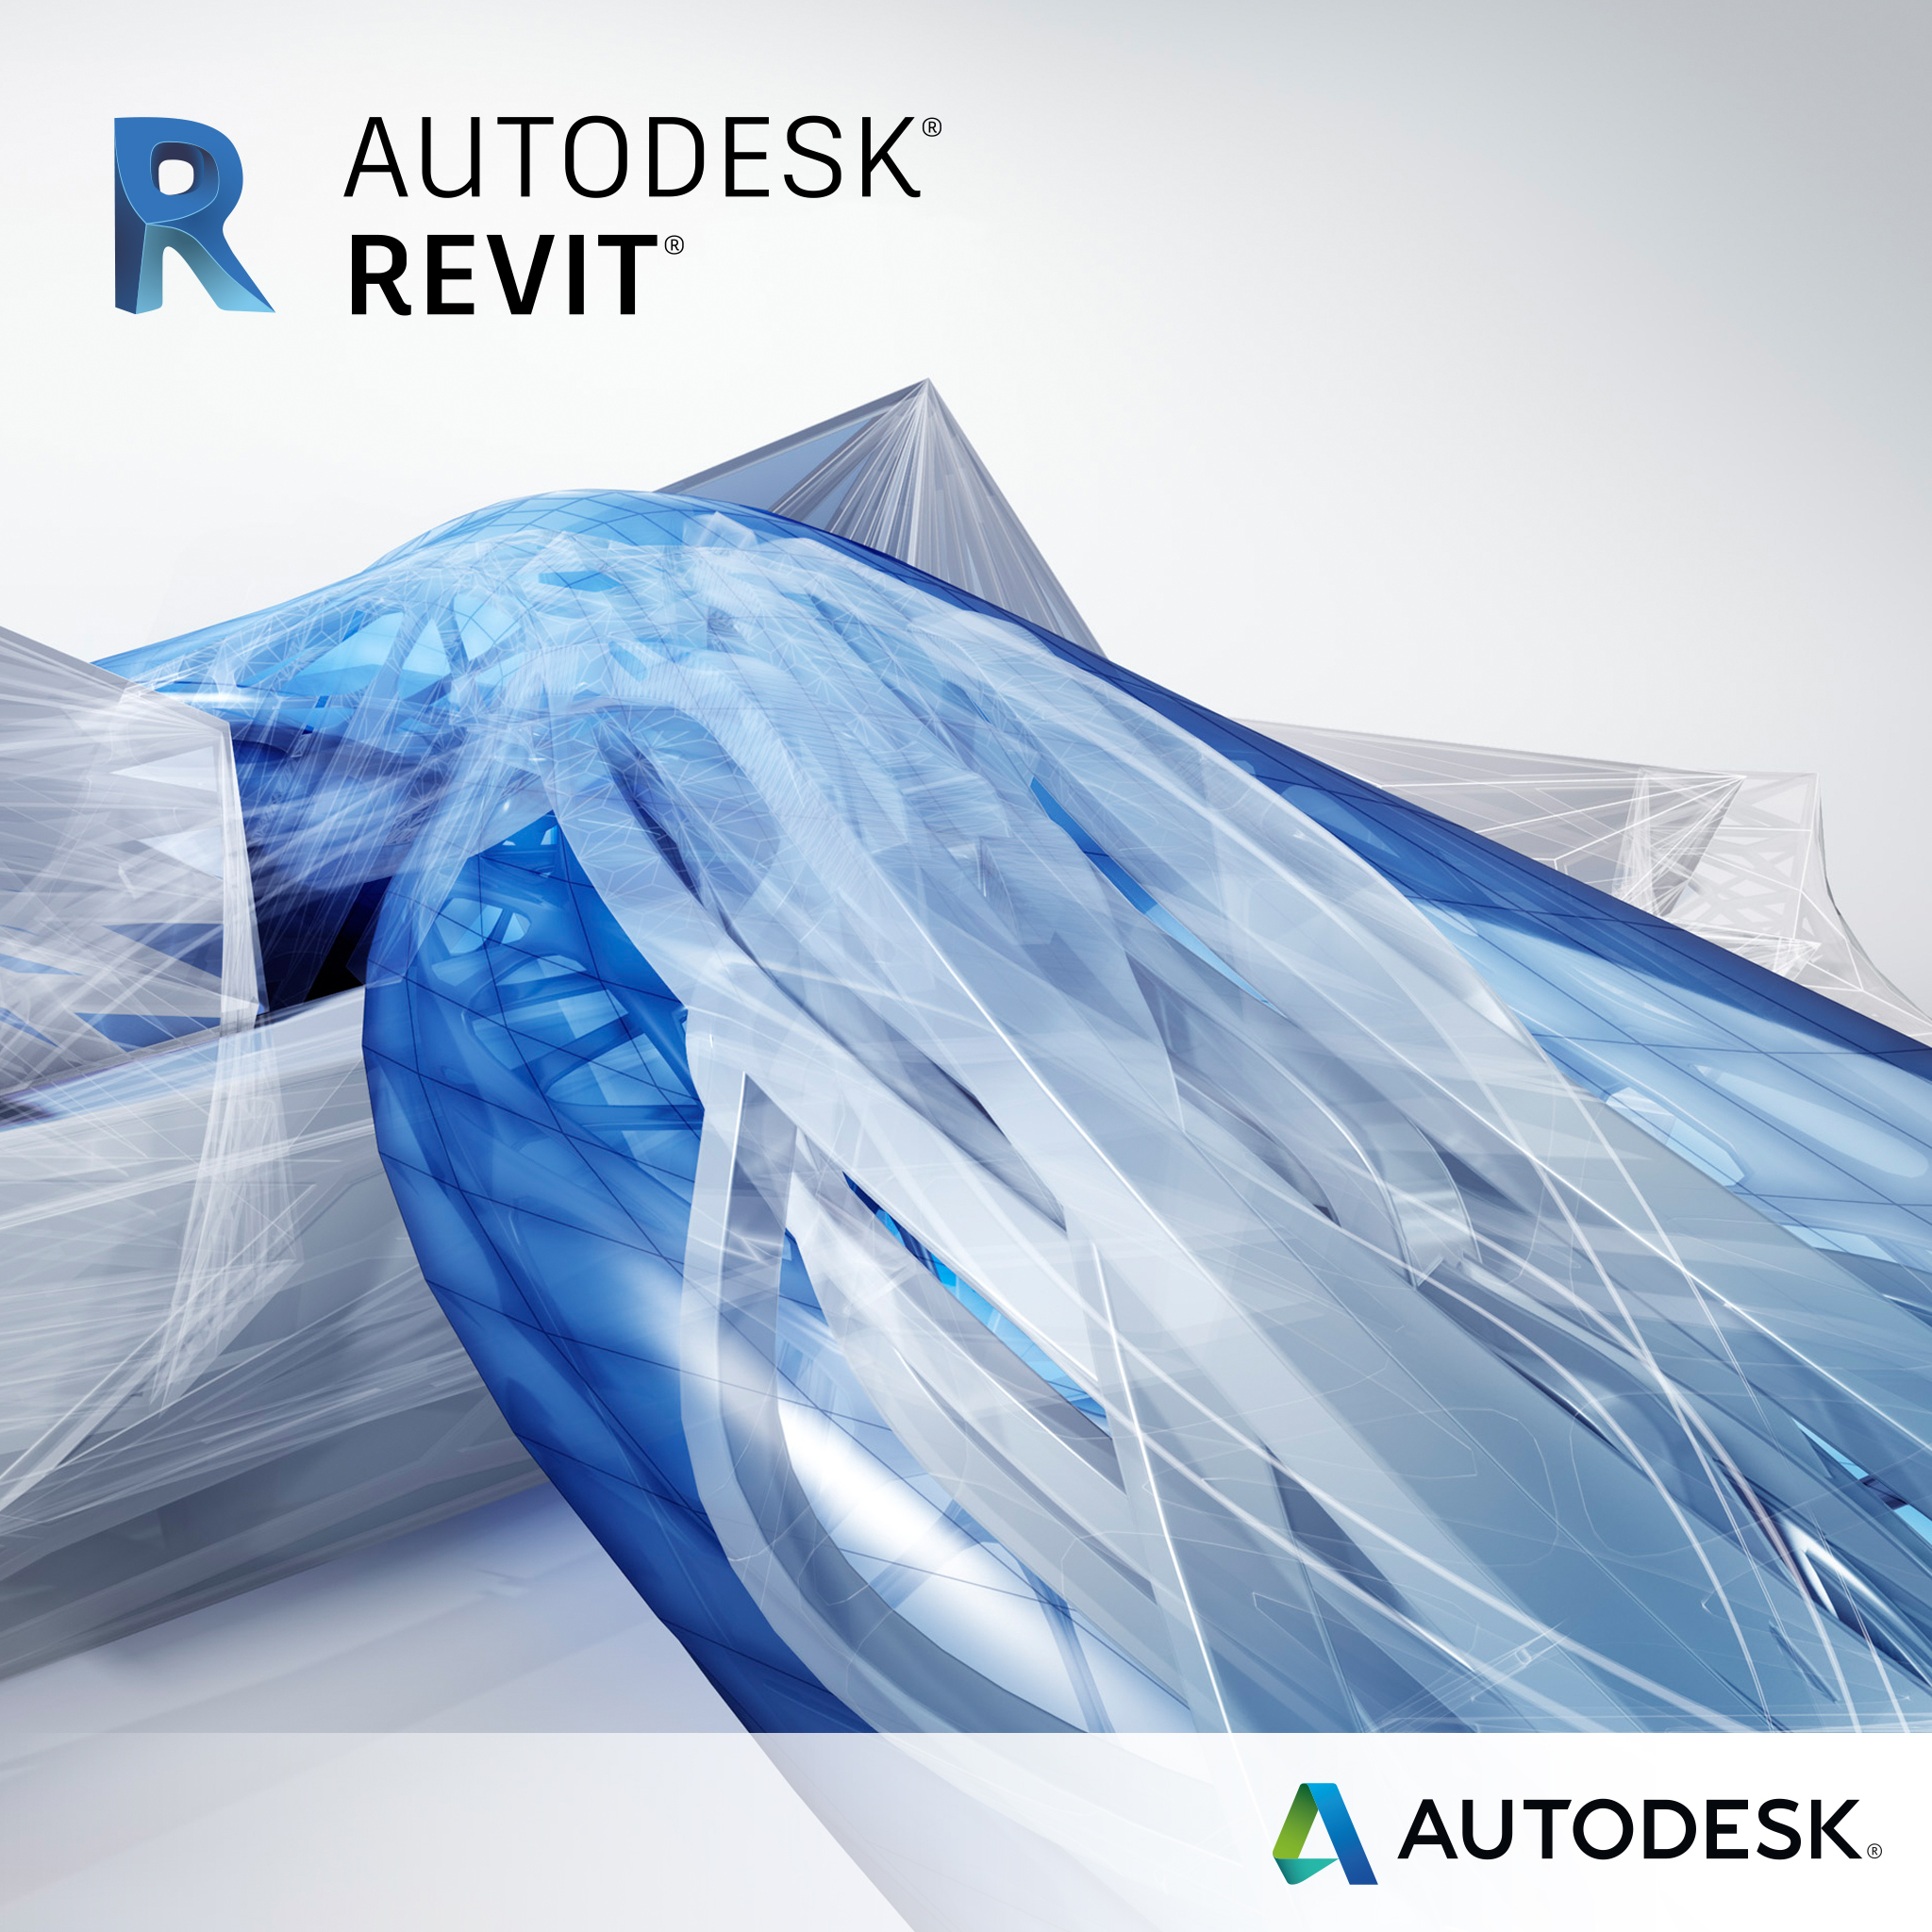 Compra con Grupo Deco tu suscripción completa de Autodesk Revit - México